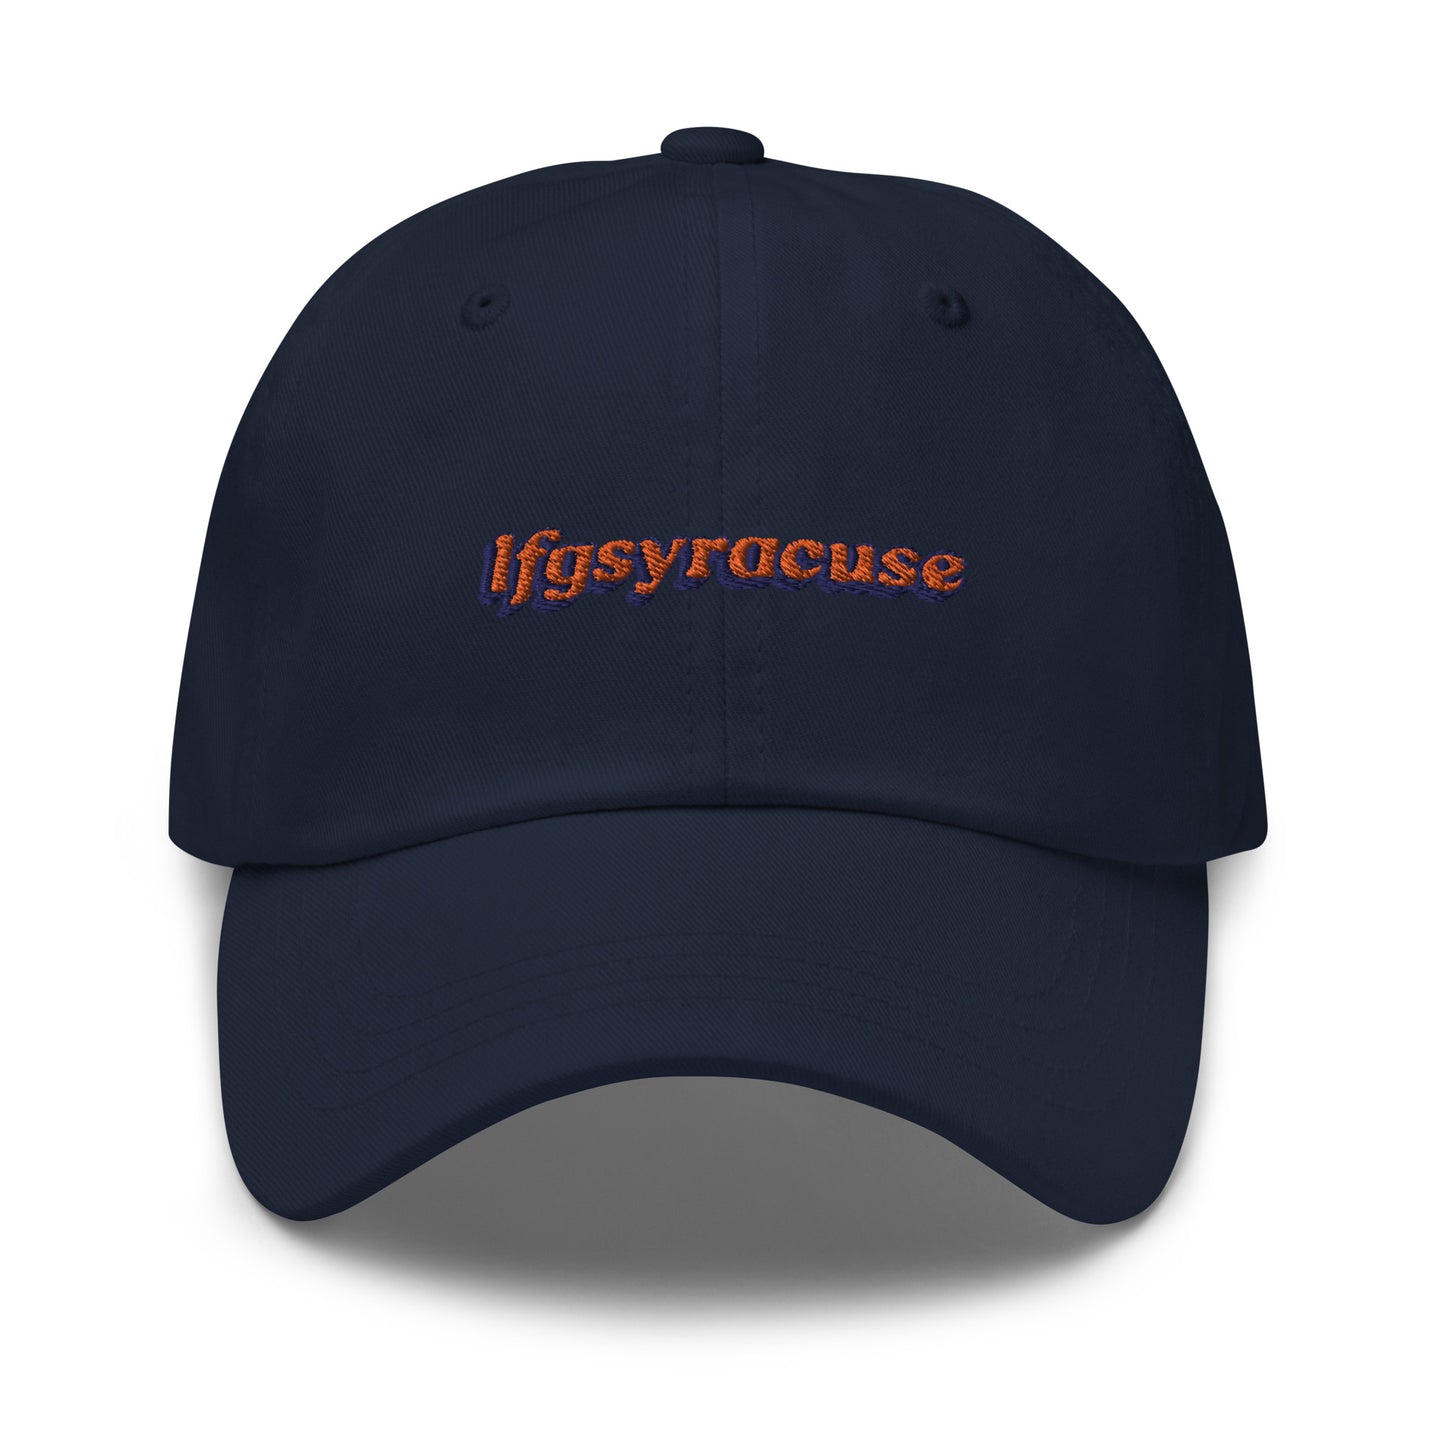 lfgsyracuse hat